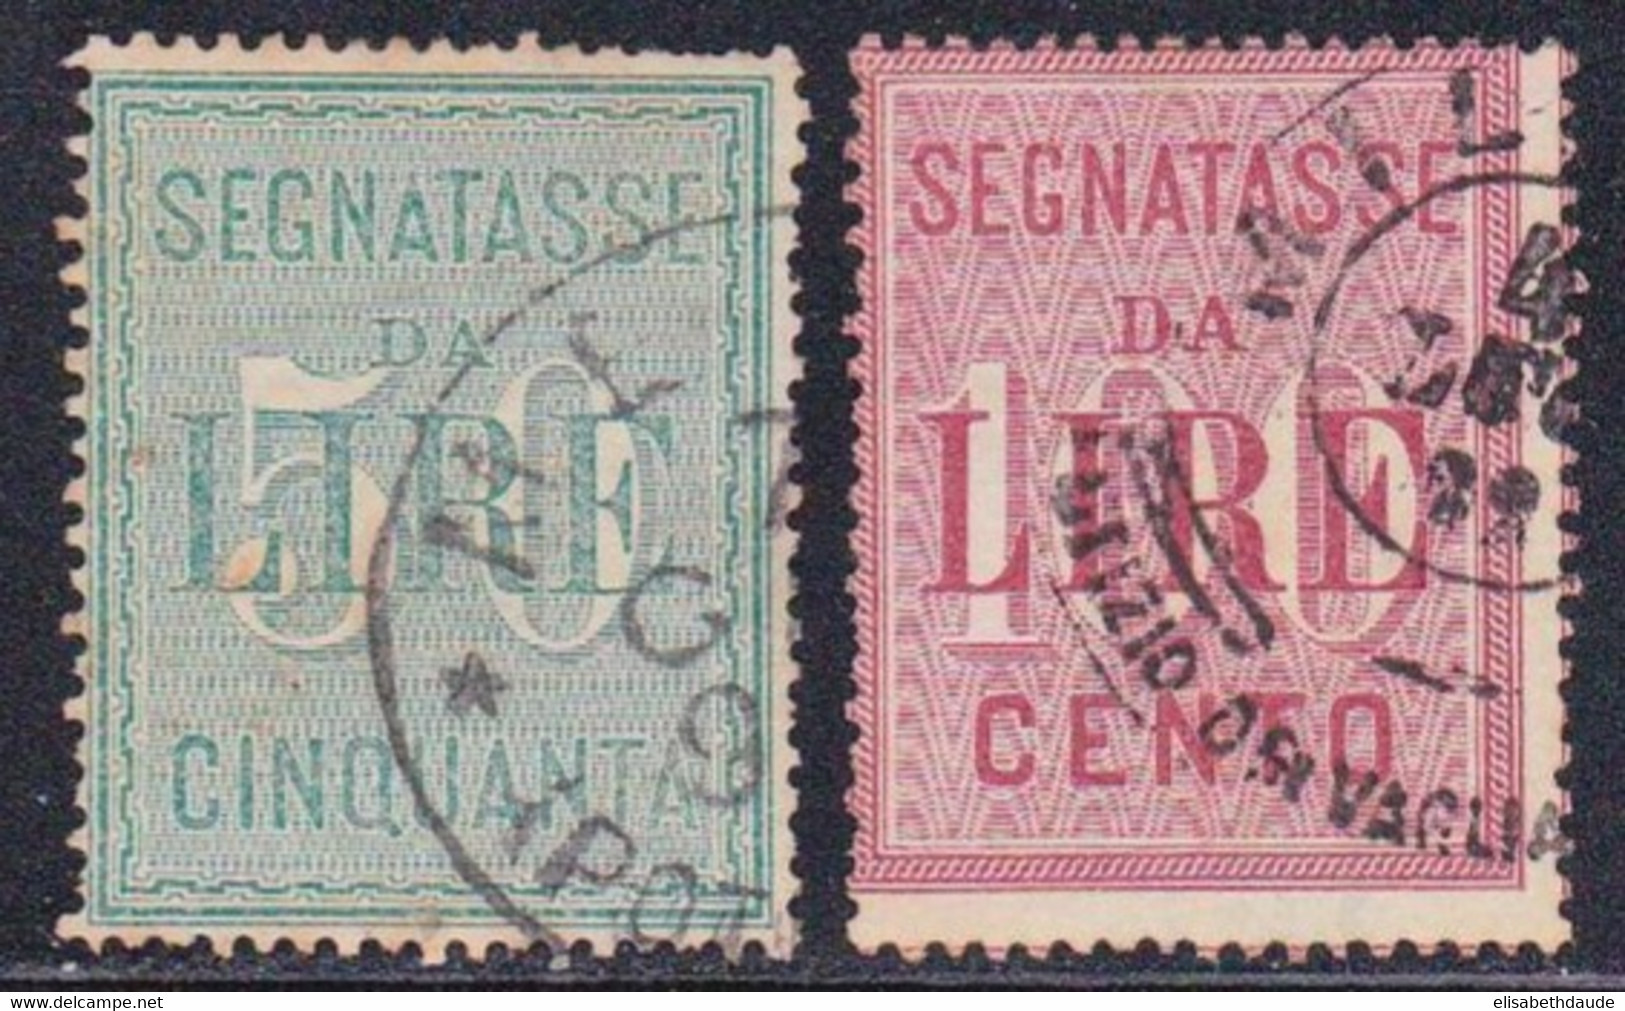 ITALIE - 1884 - YVERT N°20/21 OBLITERES - TAXE - COTE = 60 EUROS - Used